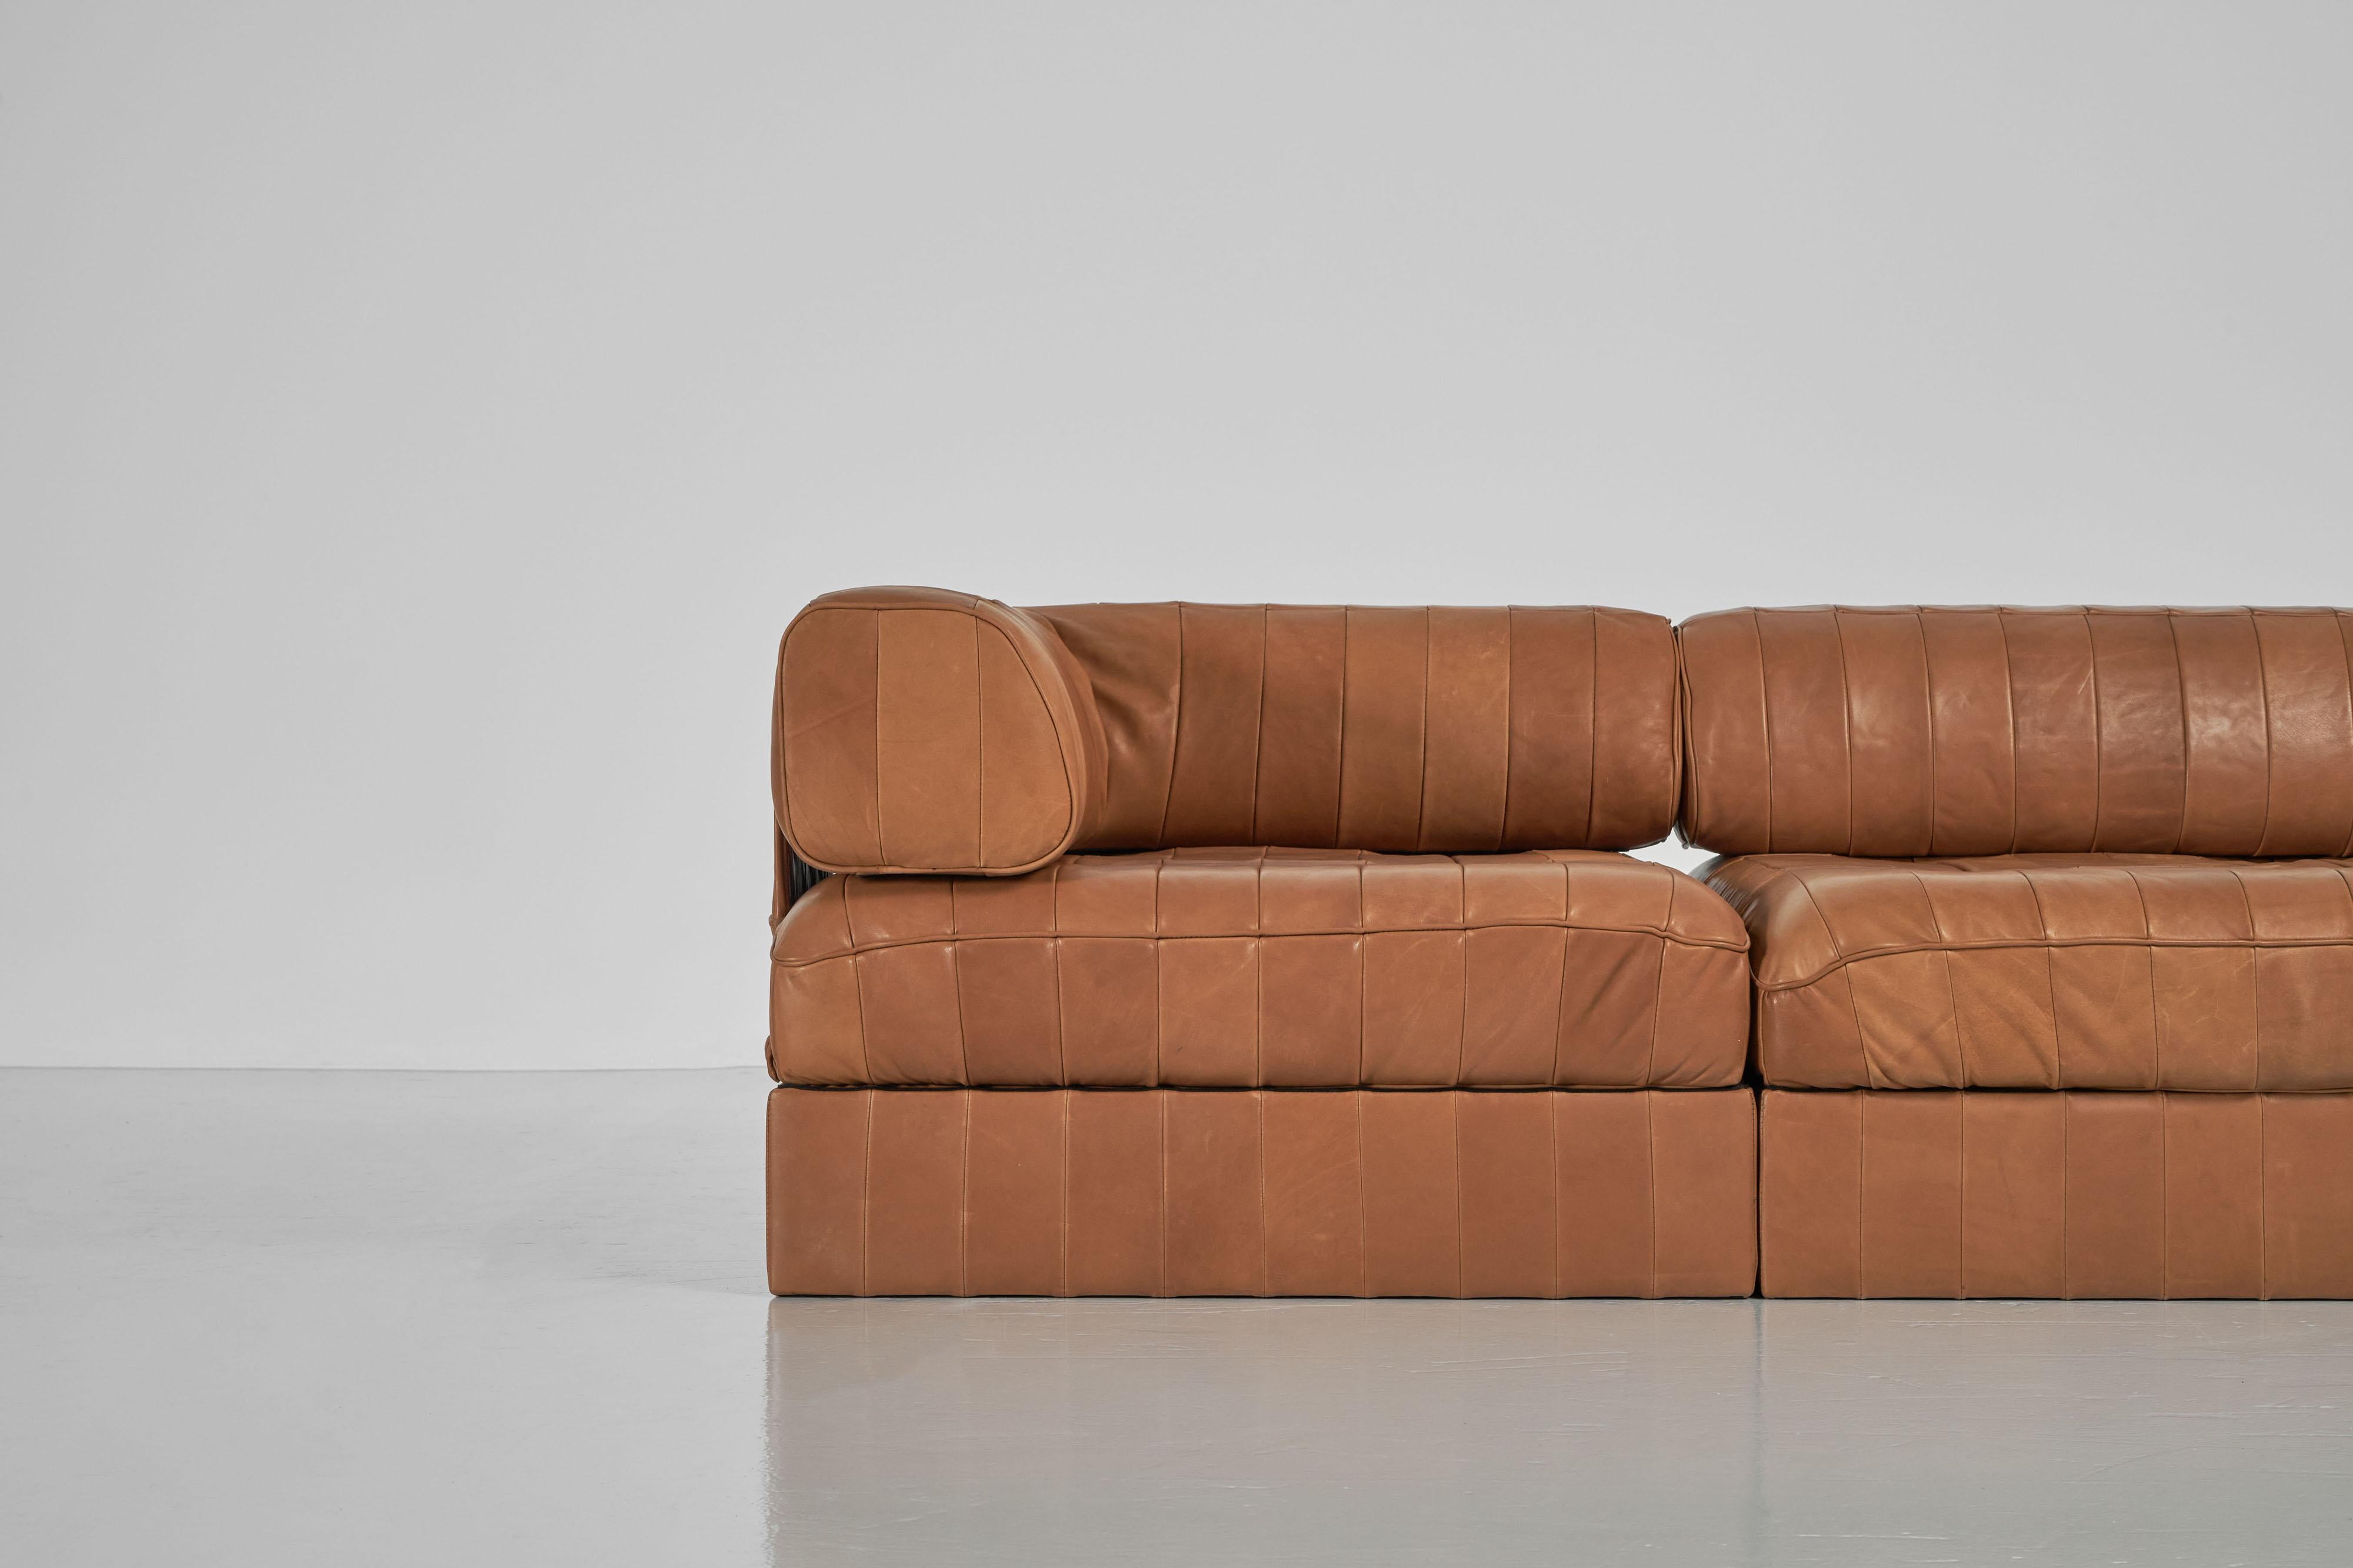 Fantastisches Patchwork-Sofa aus Leder, Modell DS88, entworfen vom De Sede-Team und hergestellt von De Sede, Schweiz, 1970er Jahre. Dieses Sofa hat ein wunderschönes Patchwork aus natürlich gegerbtem Leder, das immer noch fantastisch und stilvoll